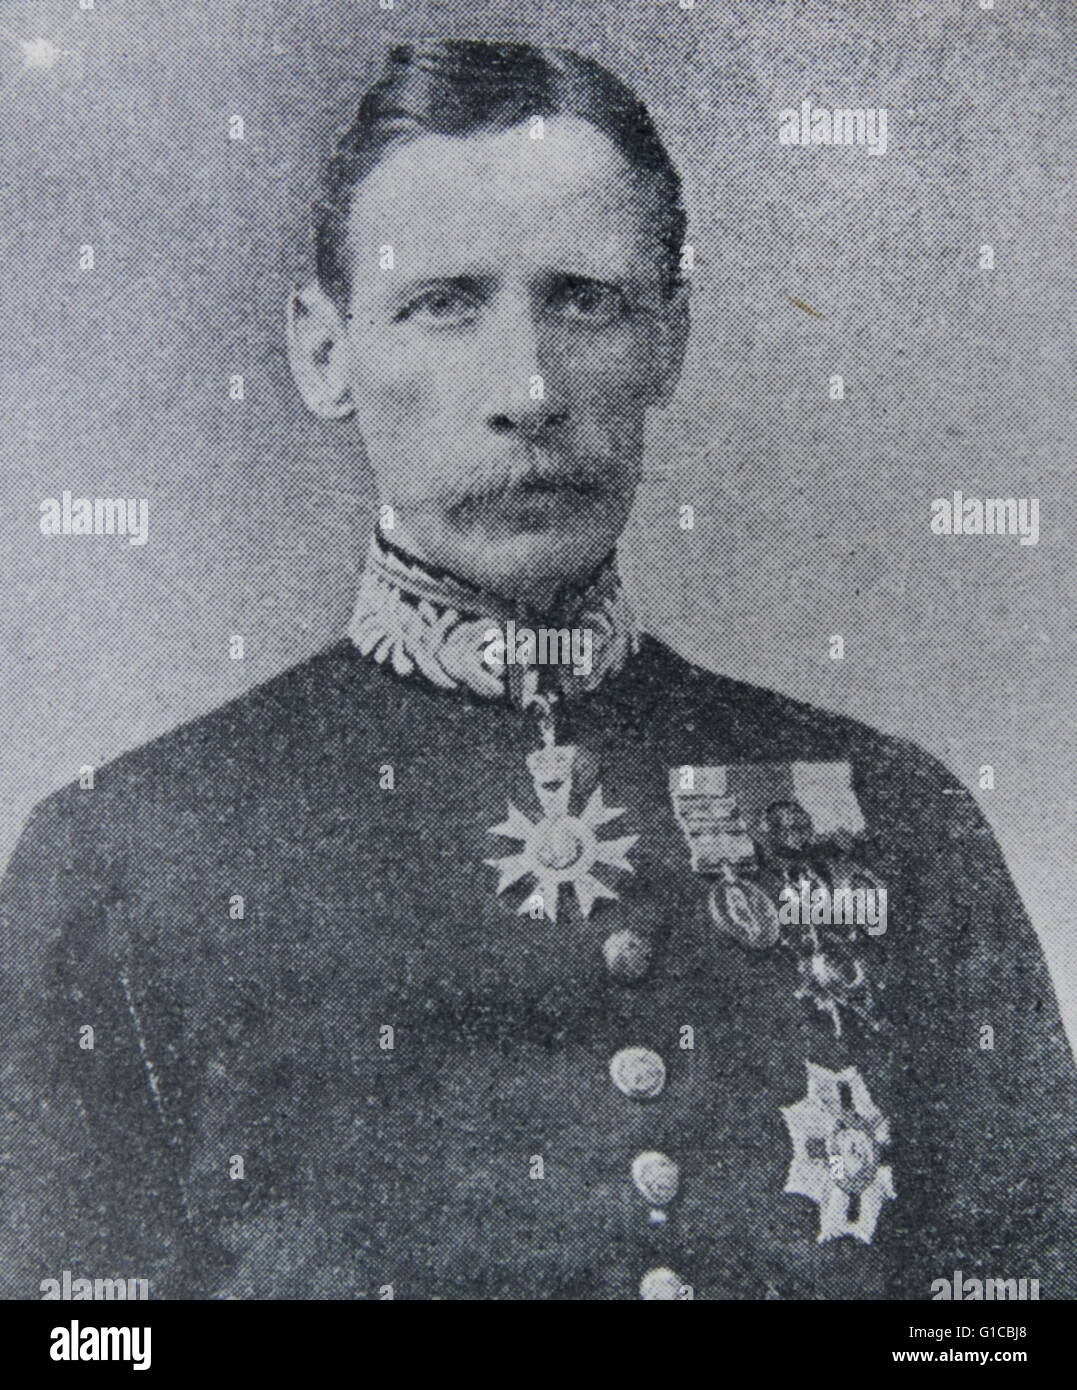 Fotografisches Porträt von Claude Maxwell MacDonald (1852-1915), britischer Diplomat, am besten bekannt für seine Verdienste in China und Japan. Datiert 1890 Stockfoto